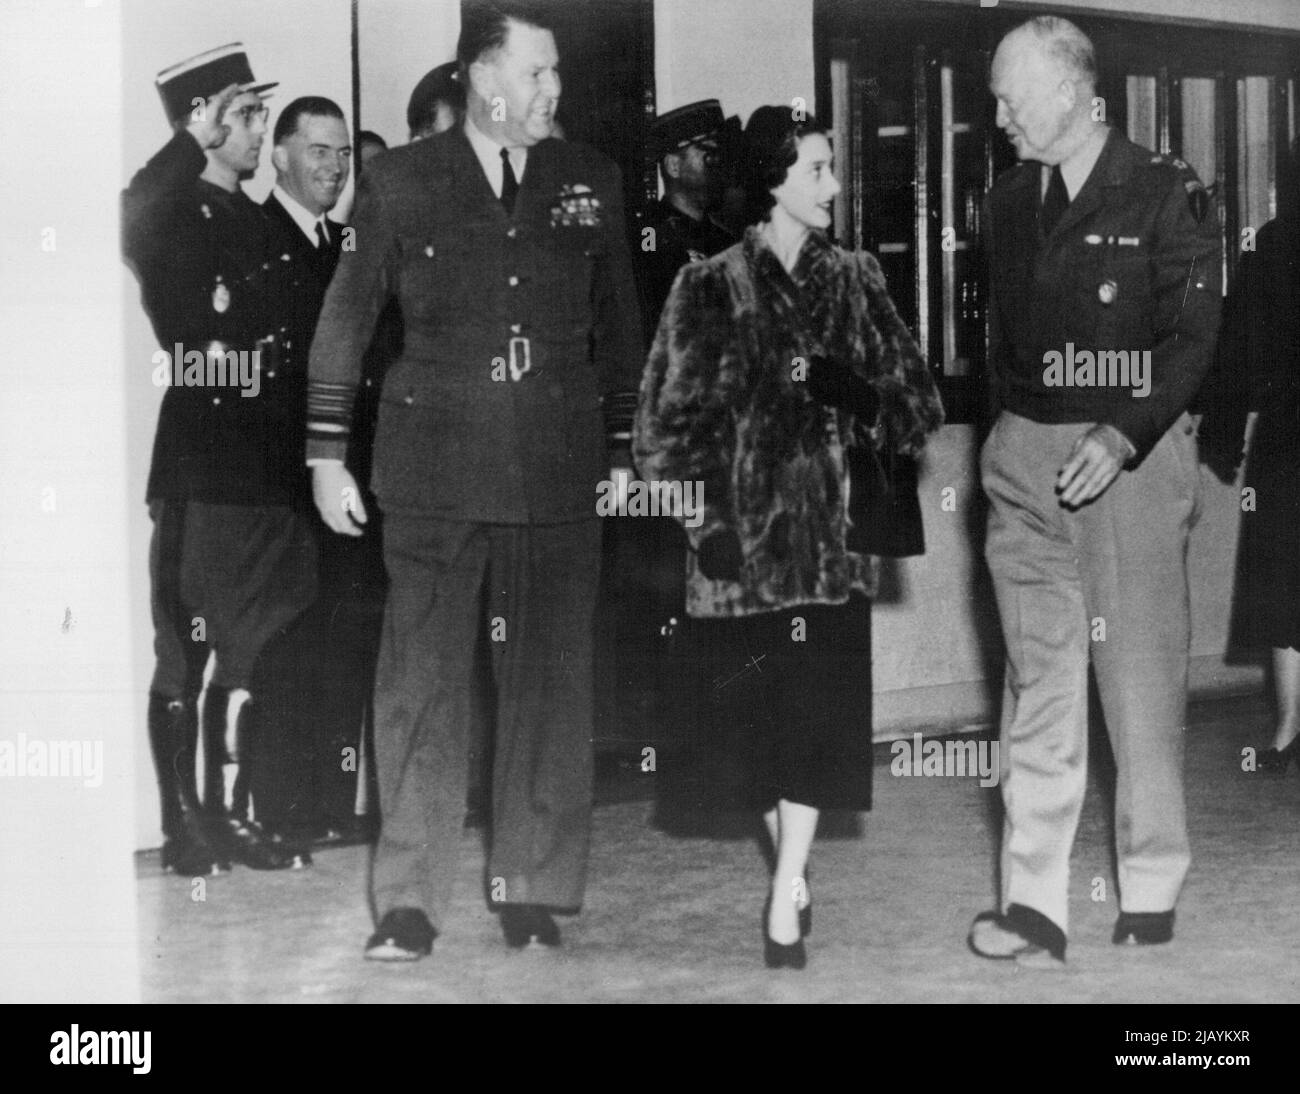 Principessa Margaret in forma - la principessa Margaret è scortata da Air Chief Marshal Sir Hugh Saunders (a sinistra) e dal generale Dwight D. Eisenhower come lei lascia S.H.A.P.E. dopo aver avuto il tè con il generale oggi novembre 23. Novembre 23, 1951. (Foto di stampa associata). Foto Stock